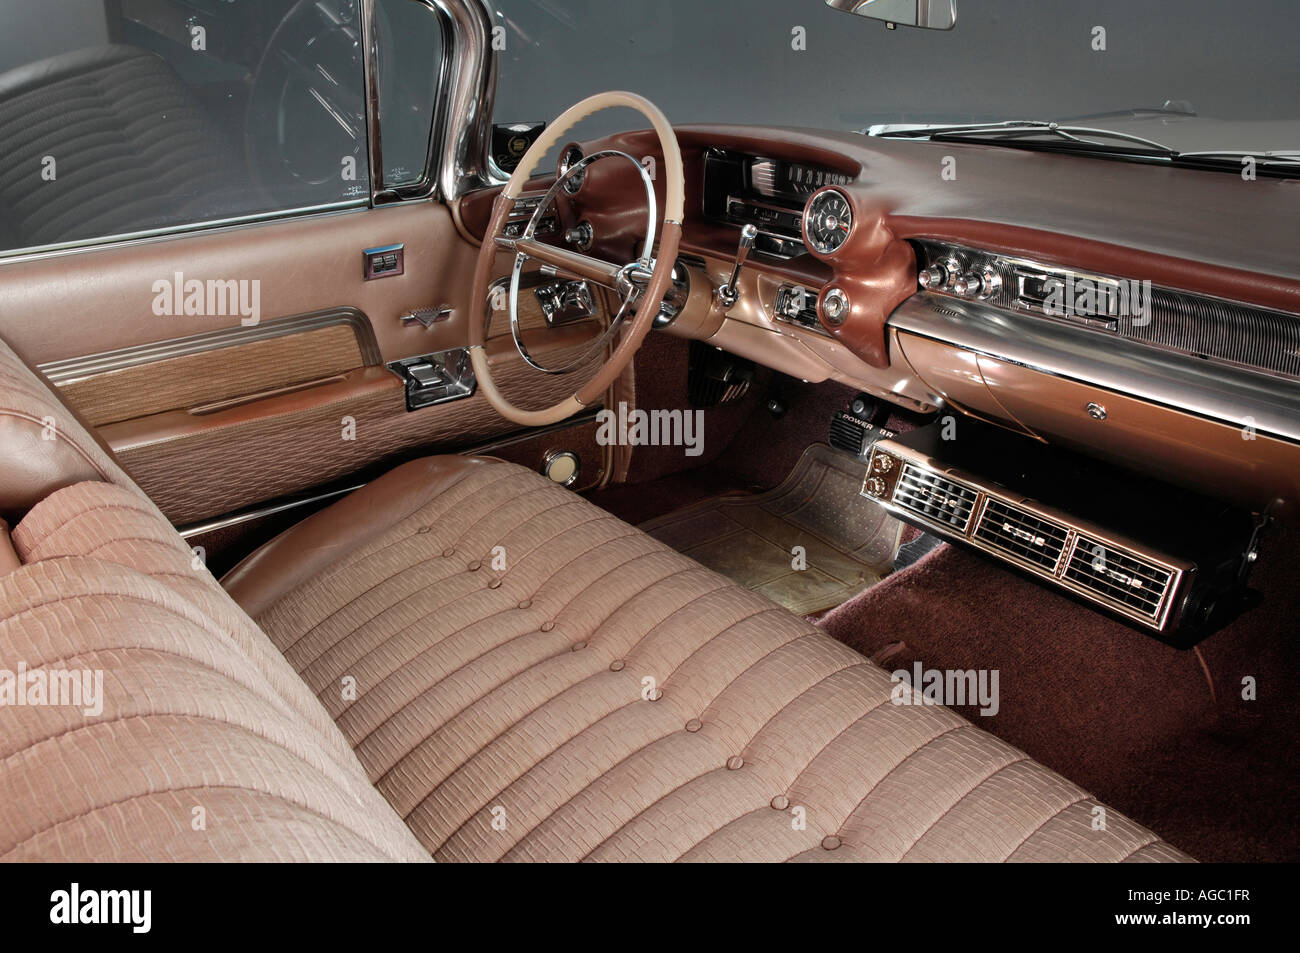 1959 Cadillac Coupe De Ville interior Stock Photo